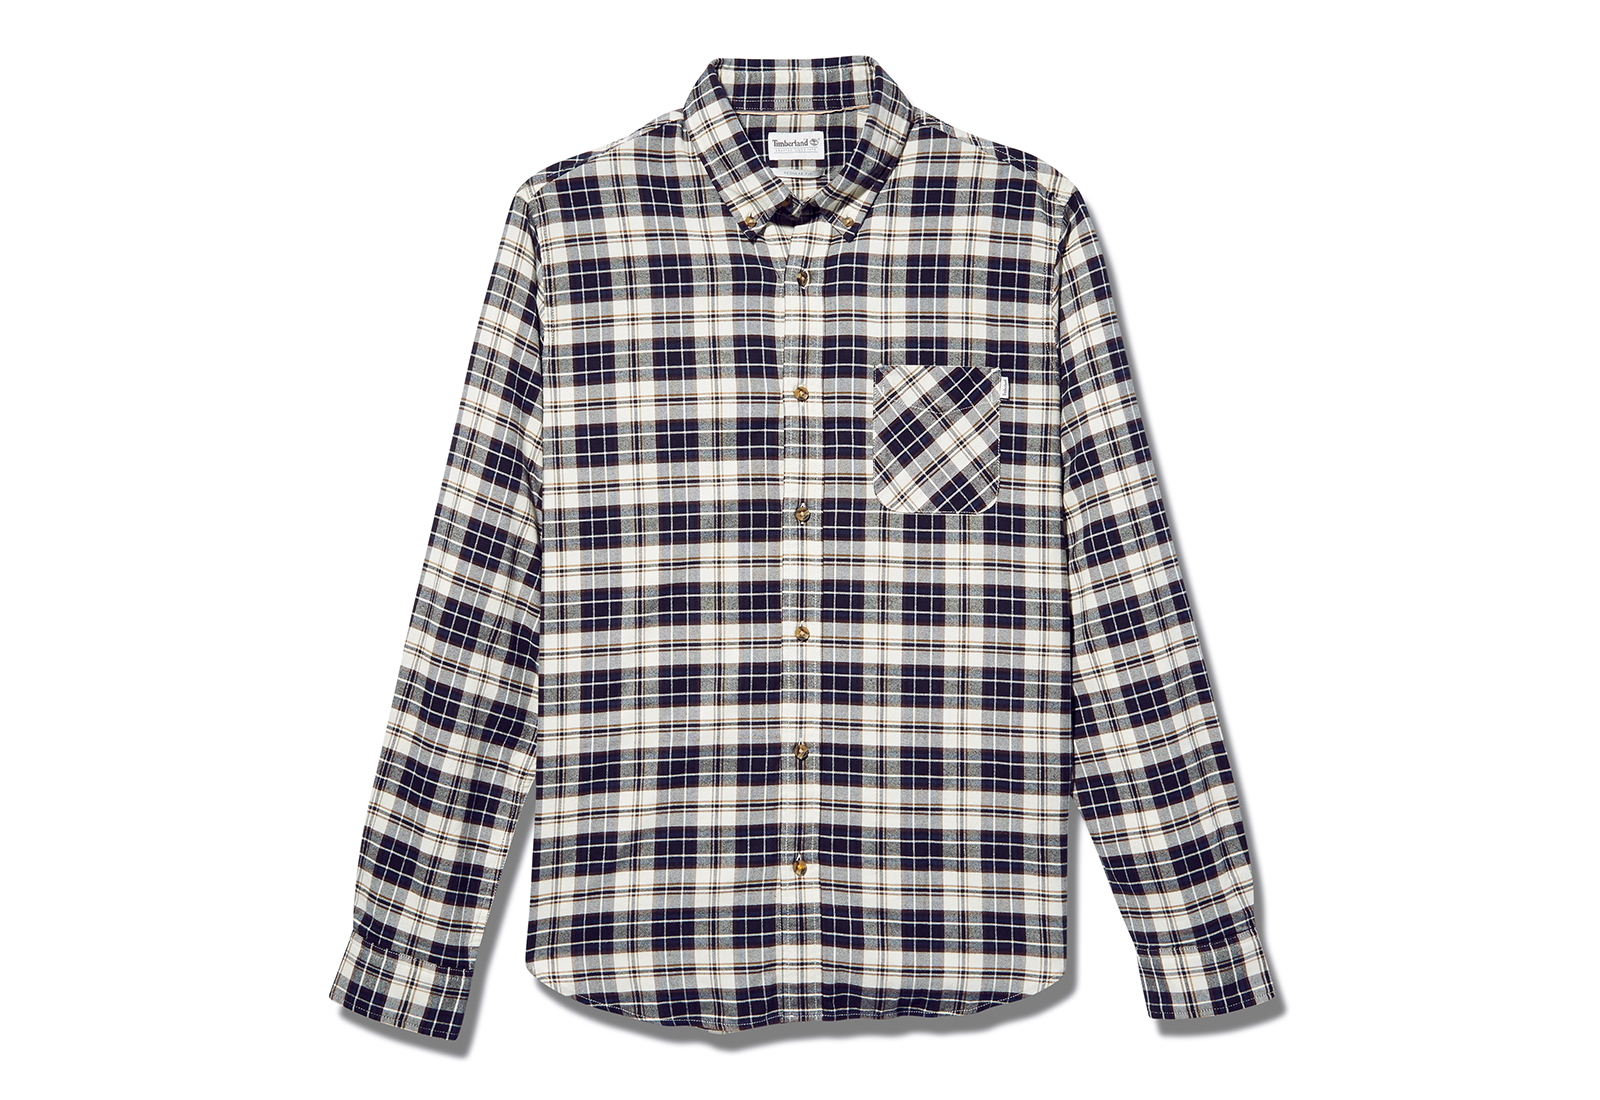 Timberland Îmbrăcăminte LS SCell Check Shirt